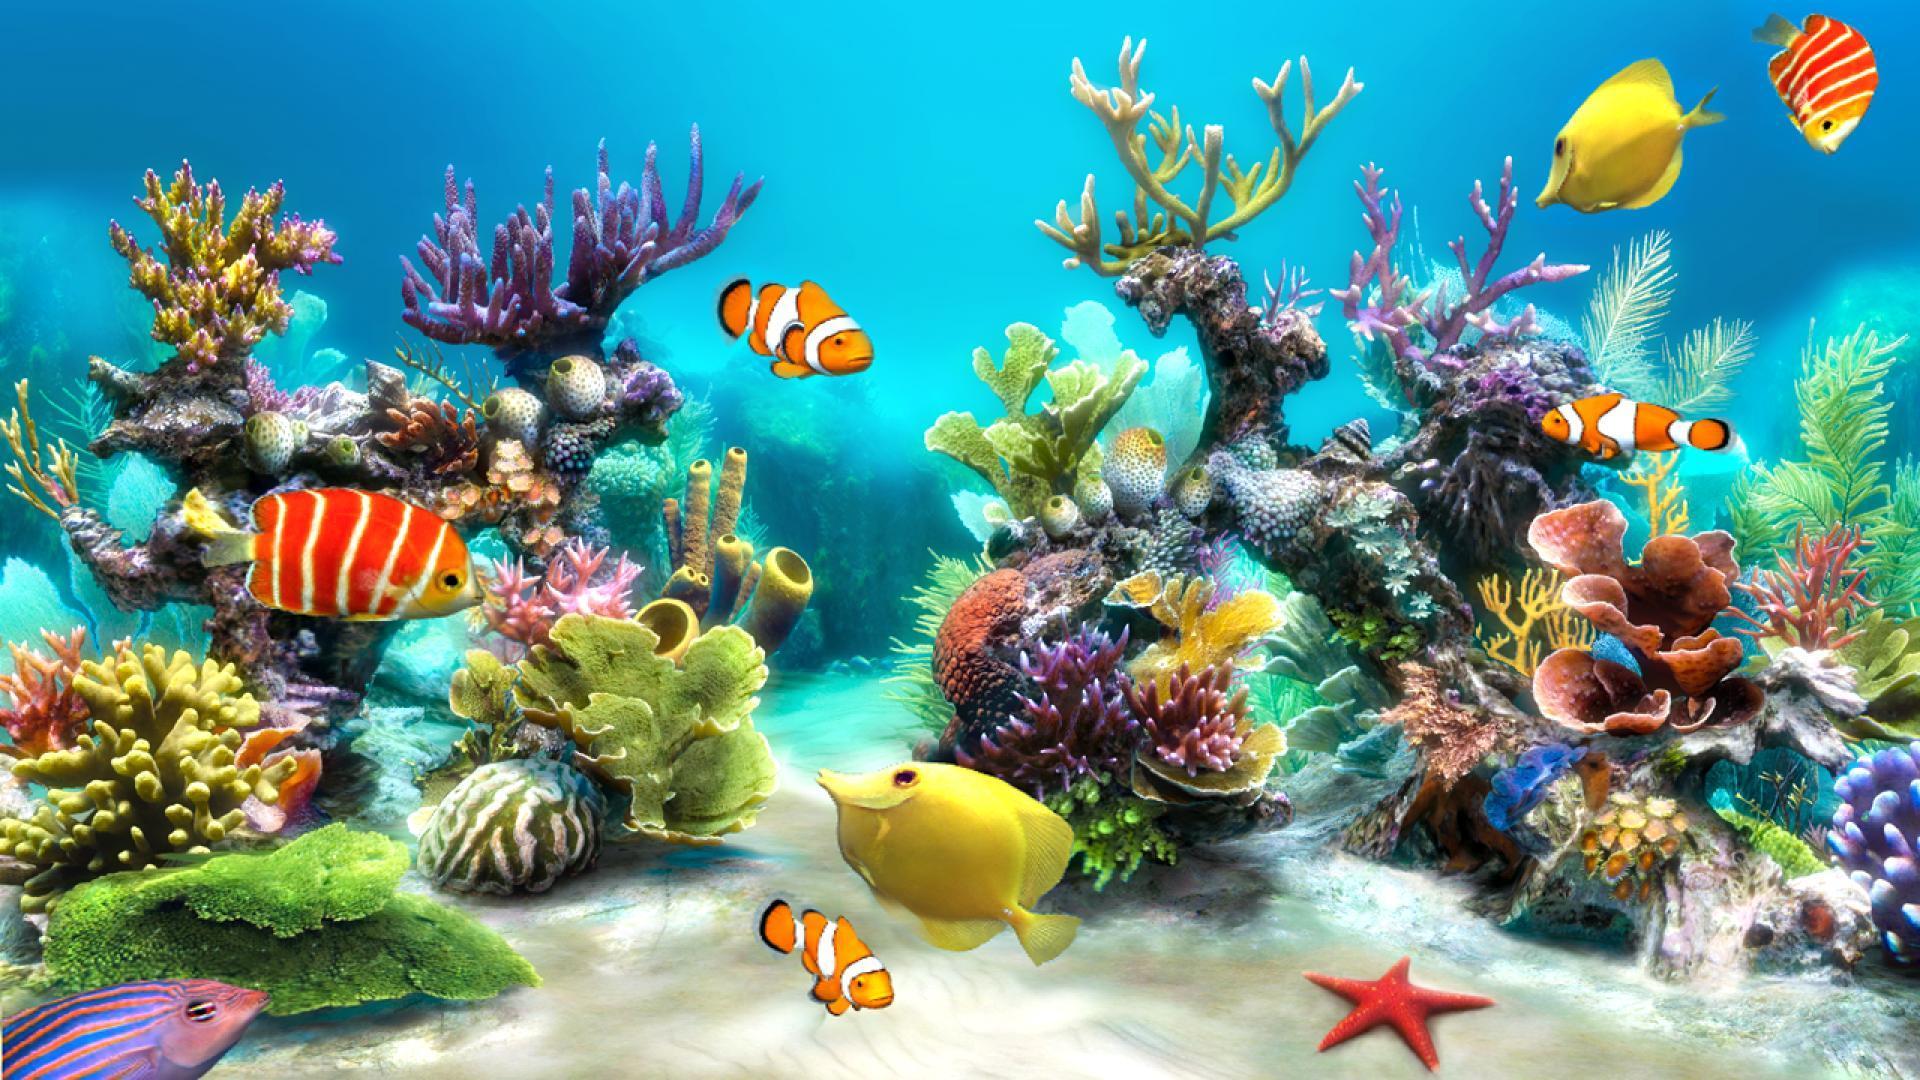 Wallpaper.wiki 3D Desktop Aquarium Wallpaper PIC WPB004724